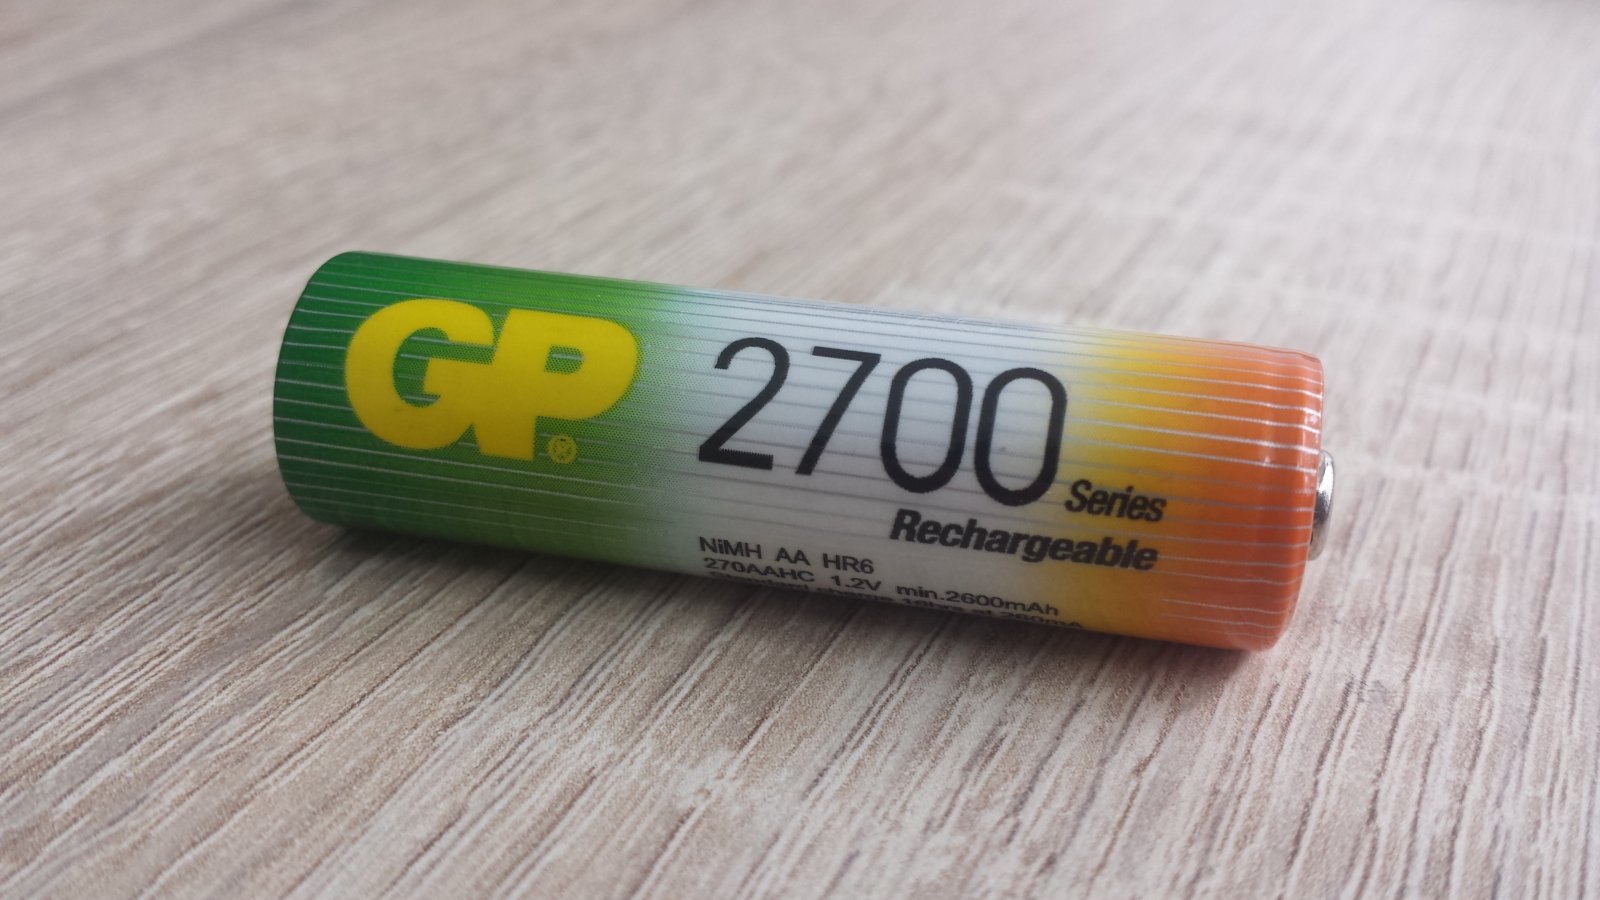 GP 2700